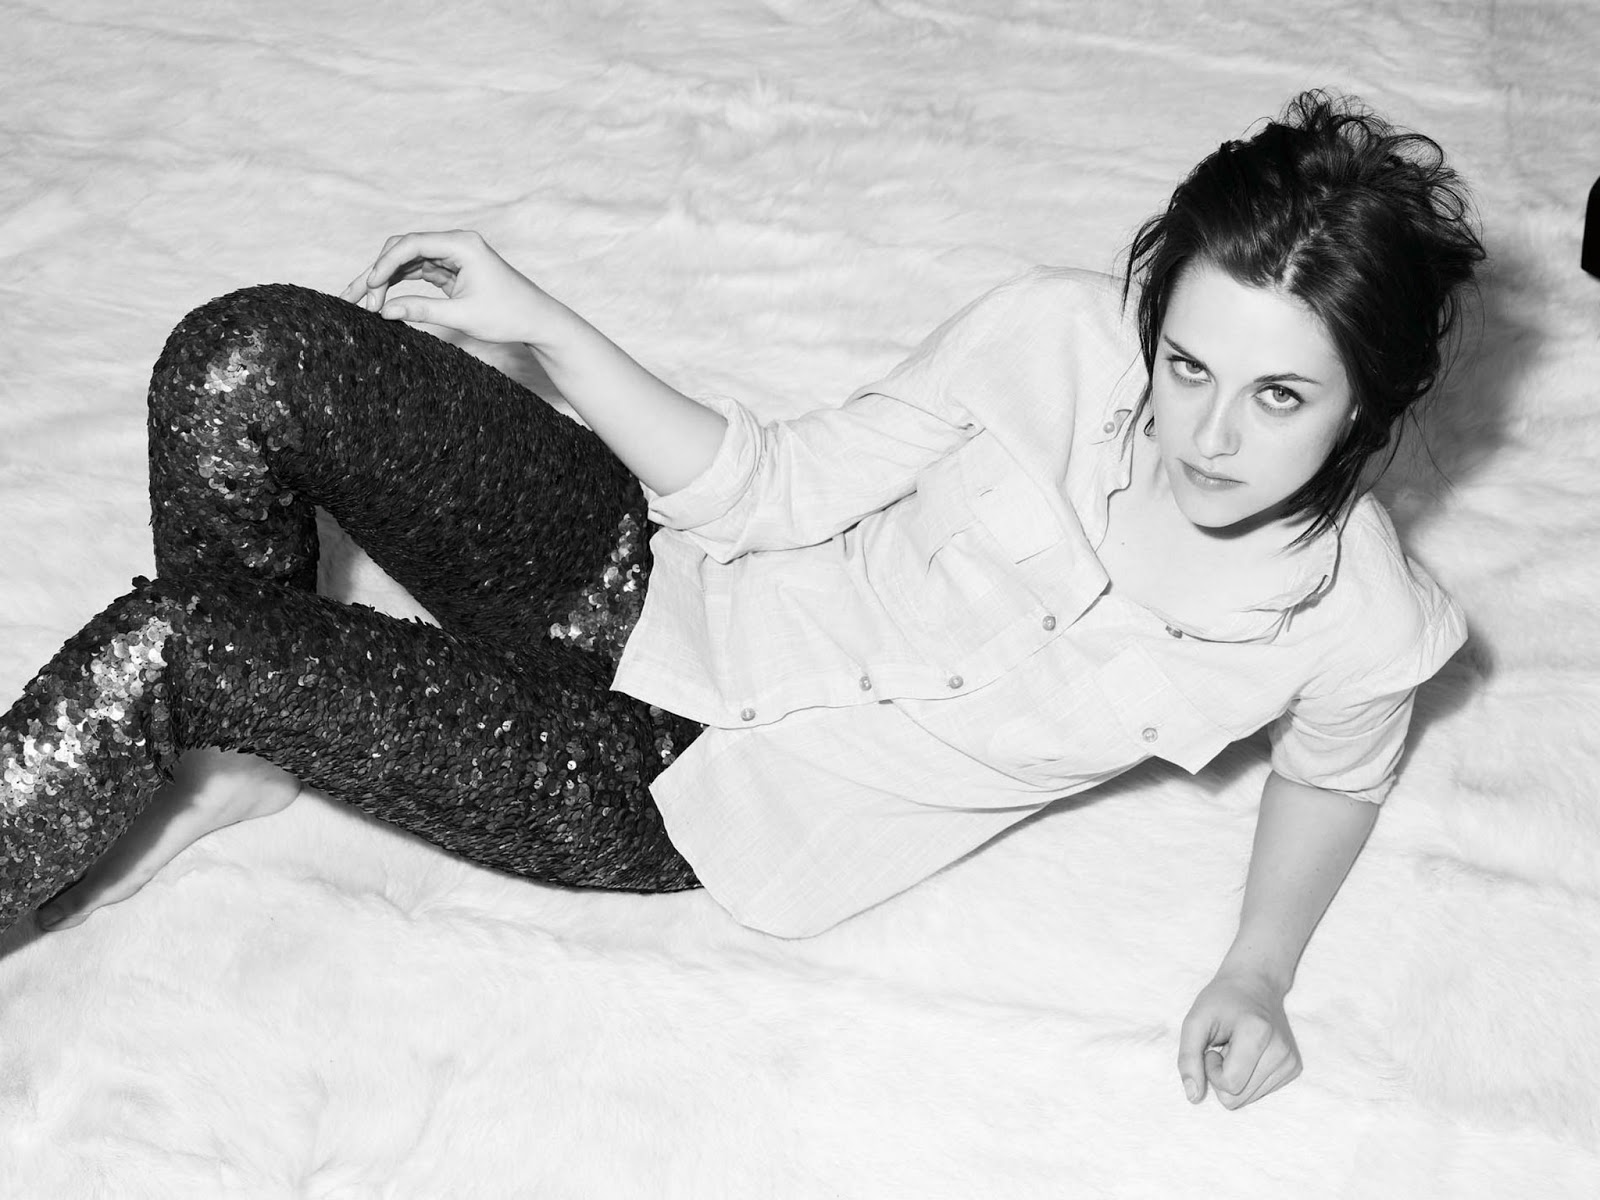 Kristen Stewart V 2017 Black and White Wallpapers